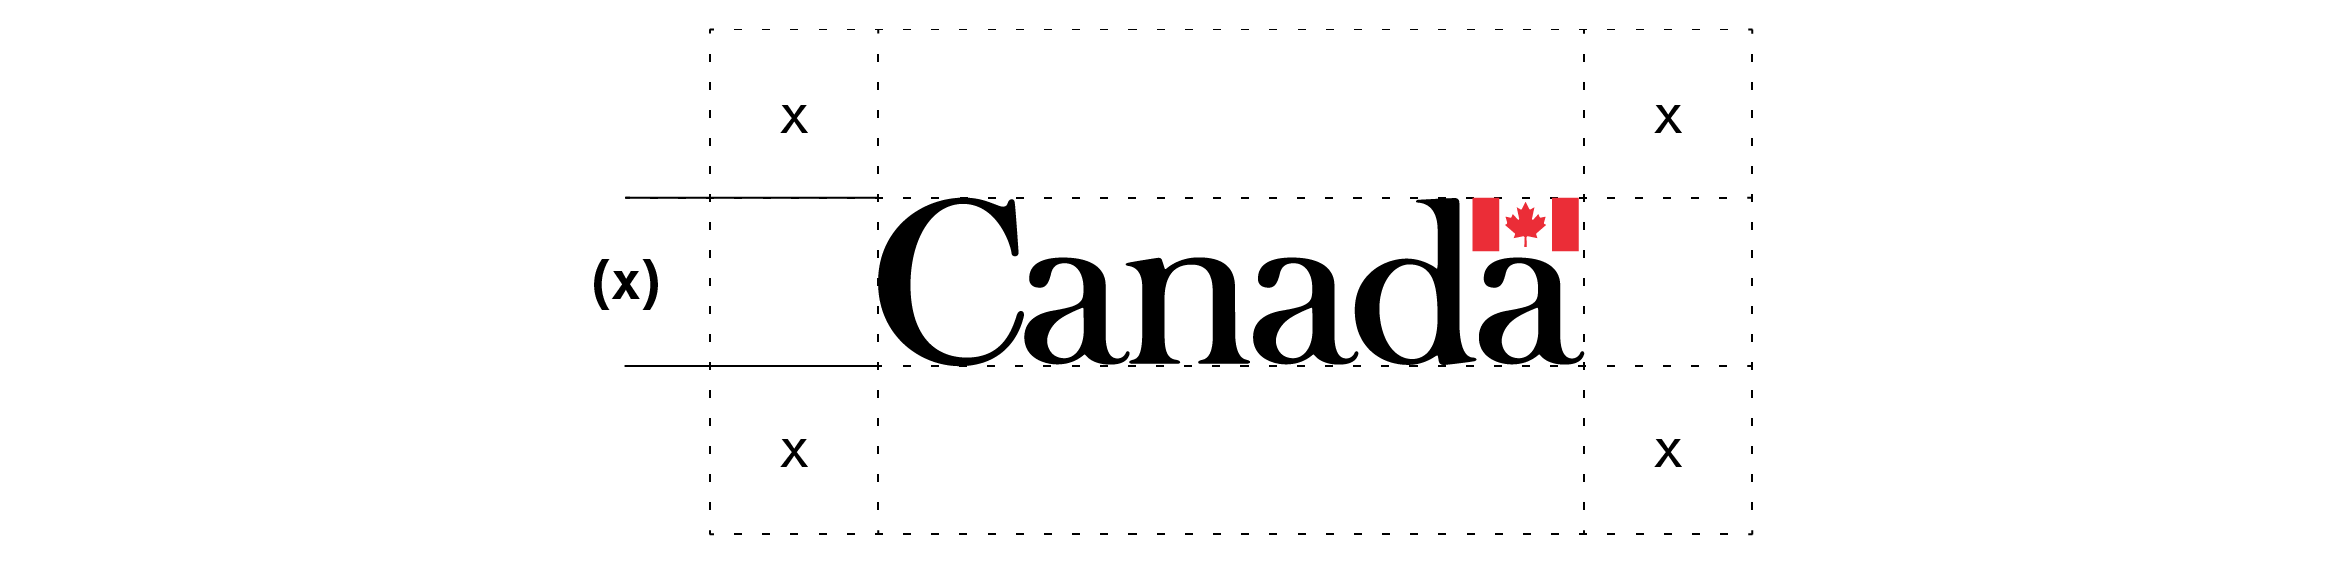 L’espace libre autour du mot-symbole « Canada » est expliqué dans le texte ci-dessus.